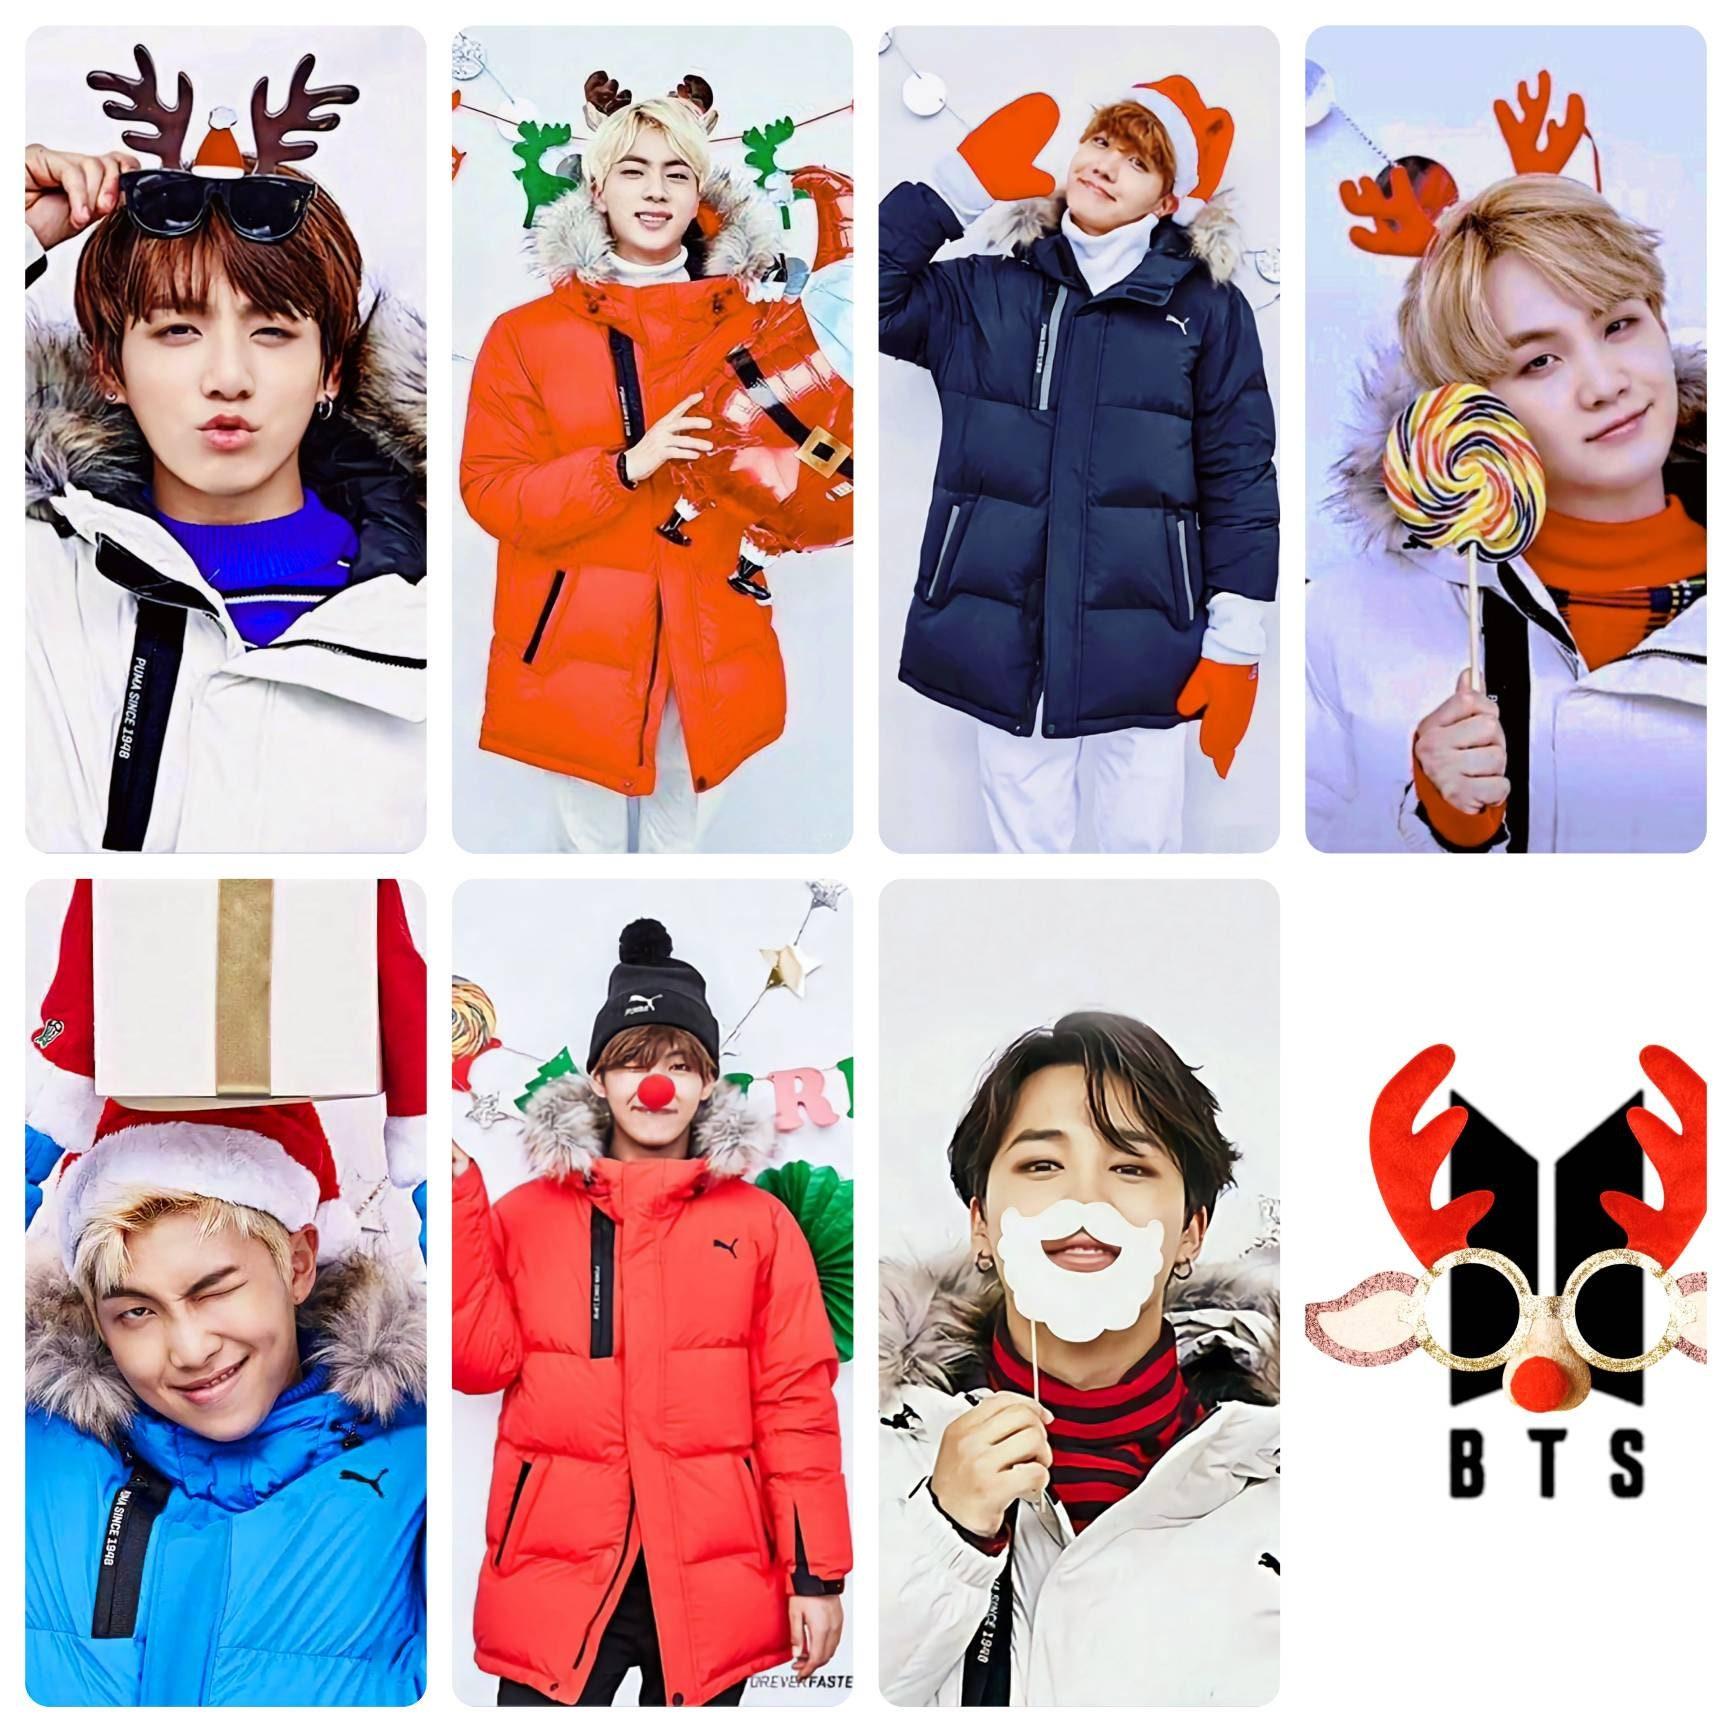 BTS Puma 2017 Christmas Photocards